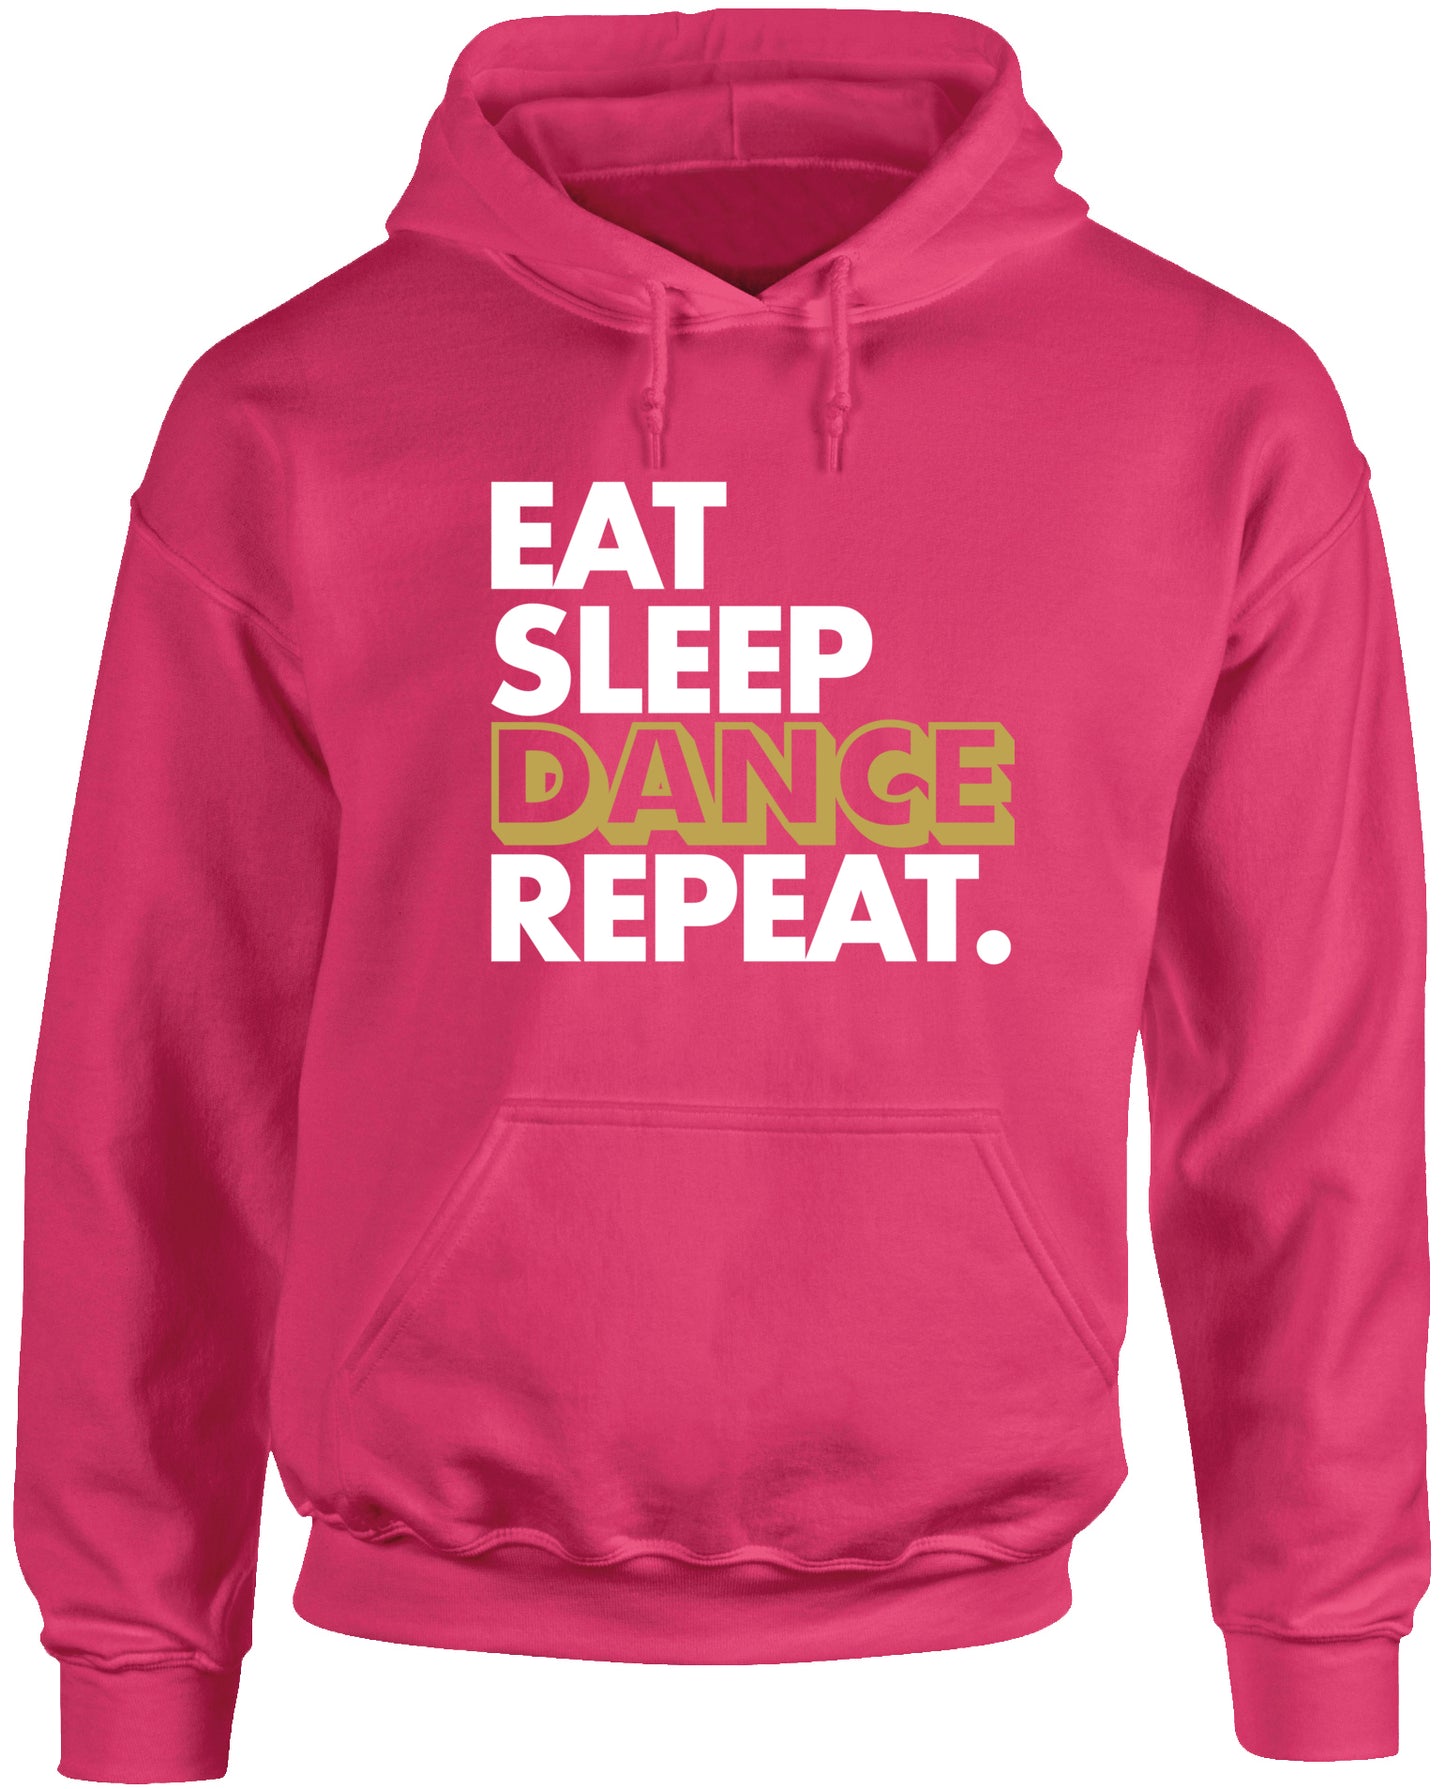 Eat Sleep Dance Repeat unisex Hoodie hooded top